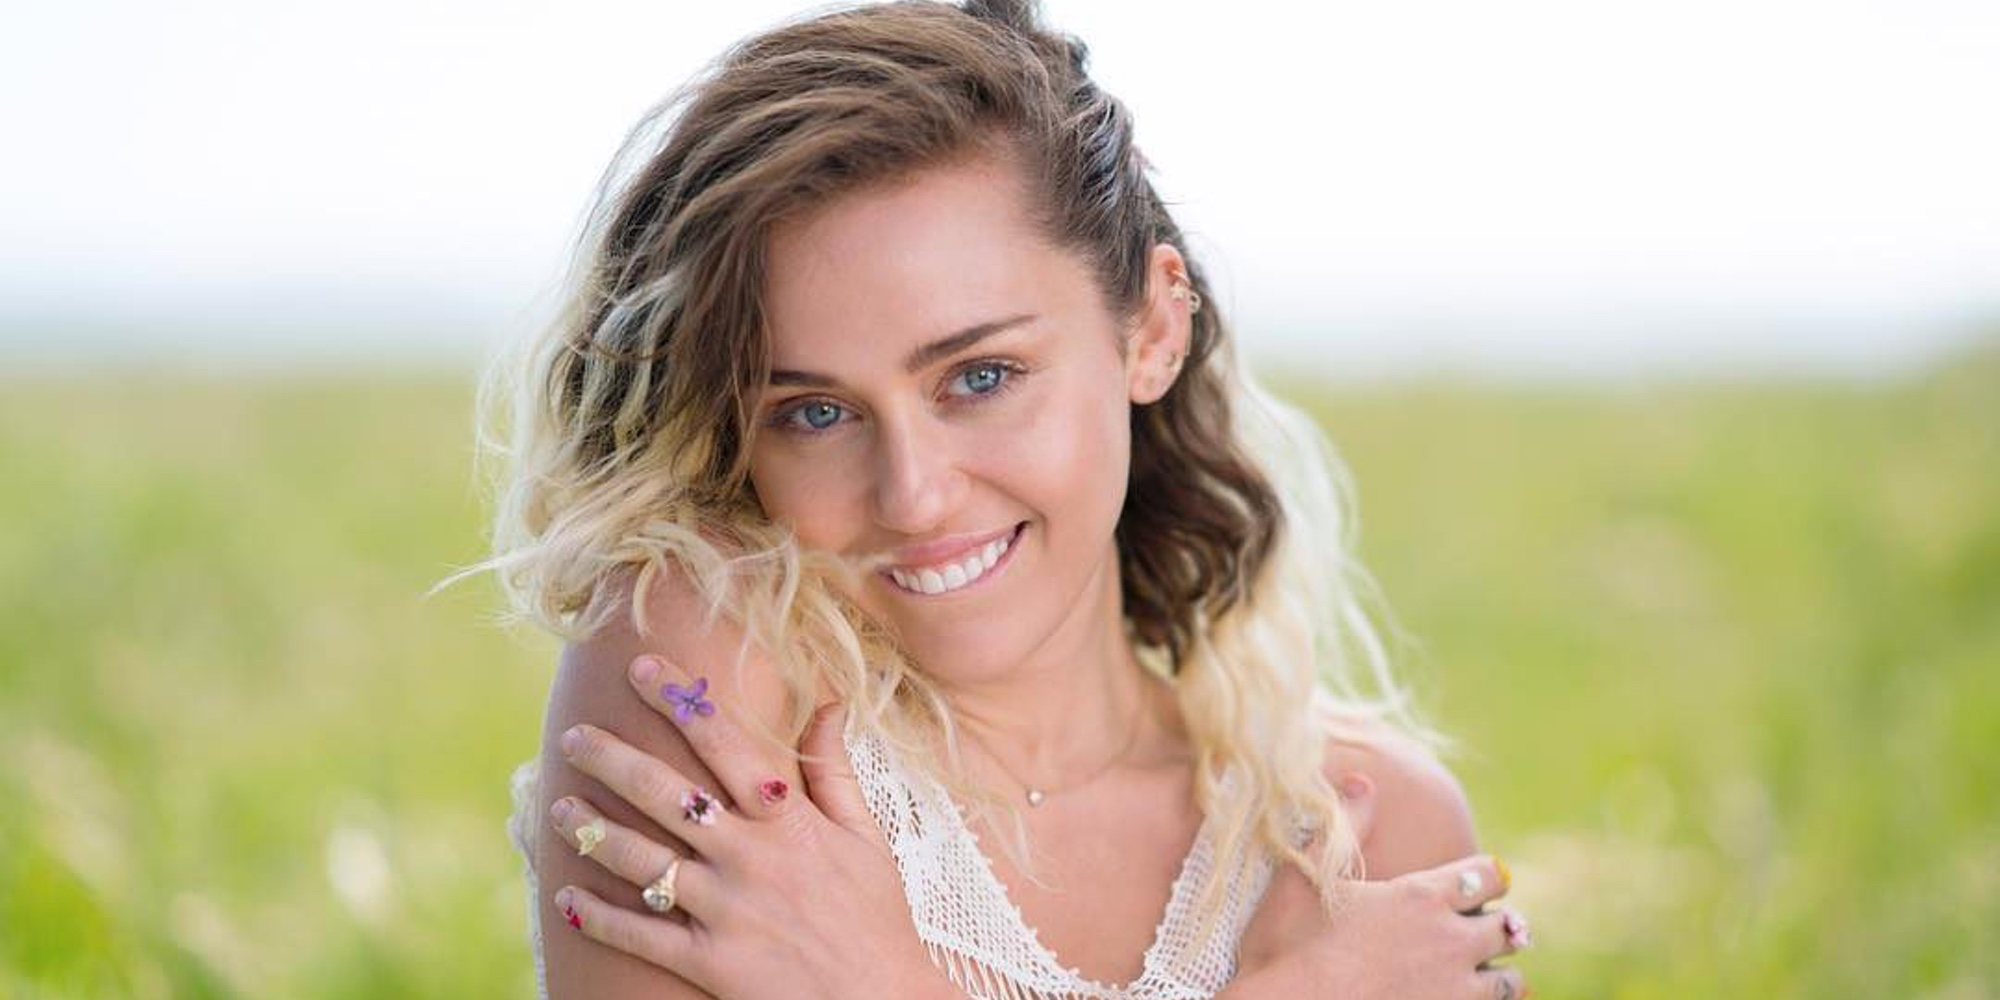 Miley Cyrus ahora vende condones a 20 dólares la unidad